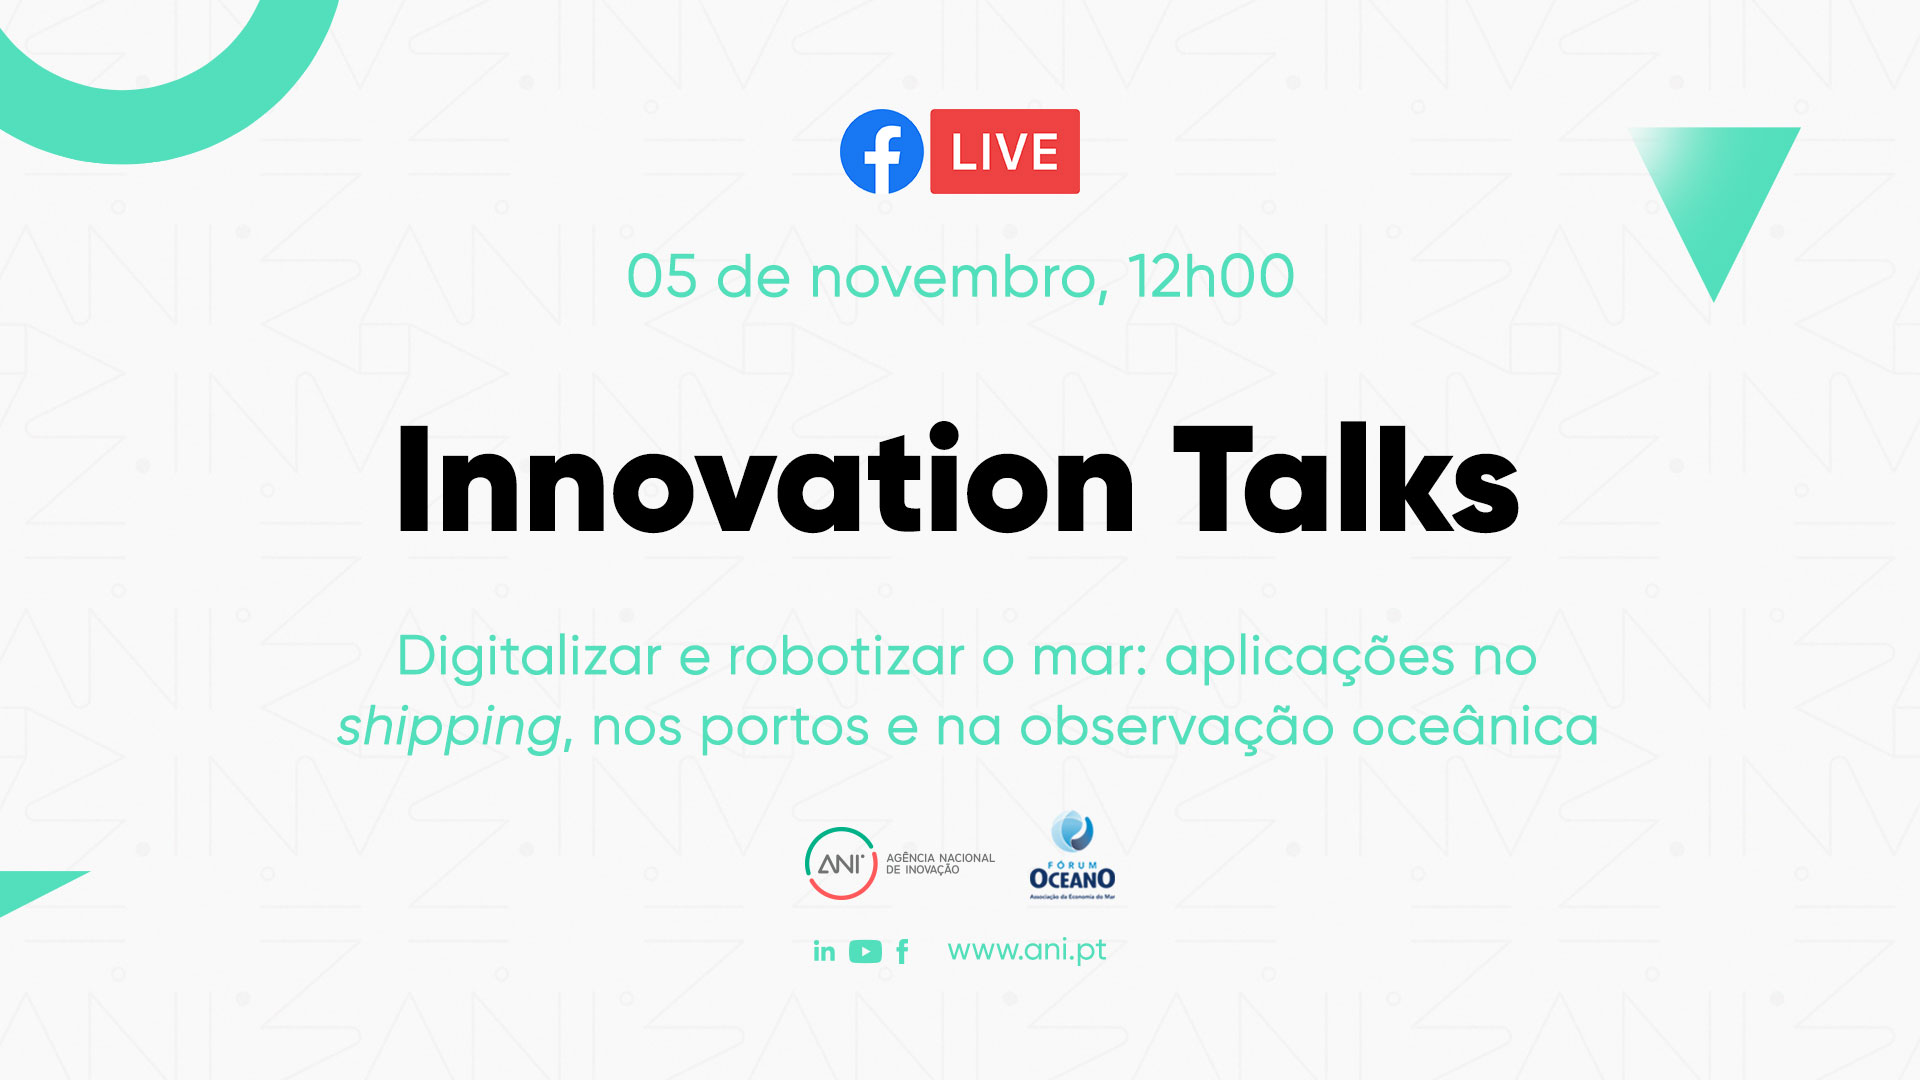 Innovation Talks: Digitalização e robotização do mar debatidas em mais uma sessão